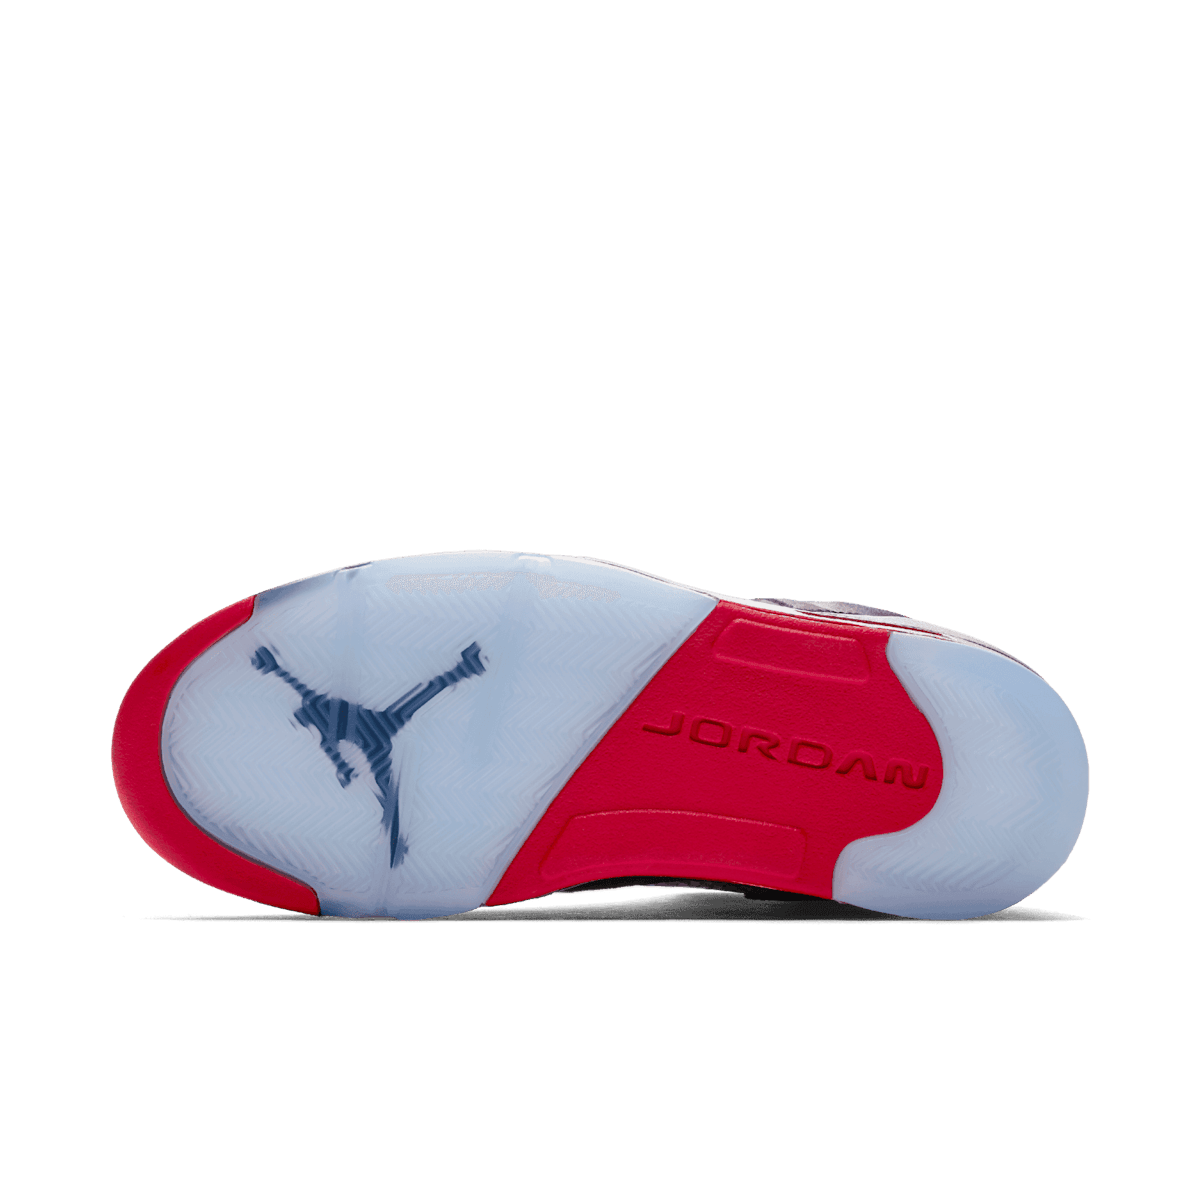 Buy Air Jordan 5 Retro 'Satin Bred' - 136027 006